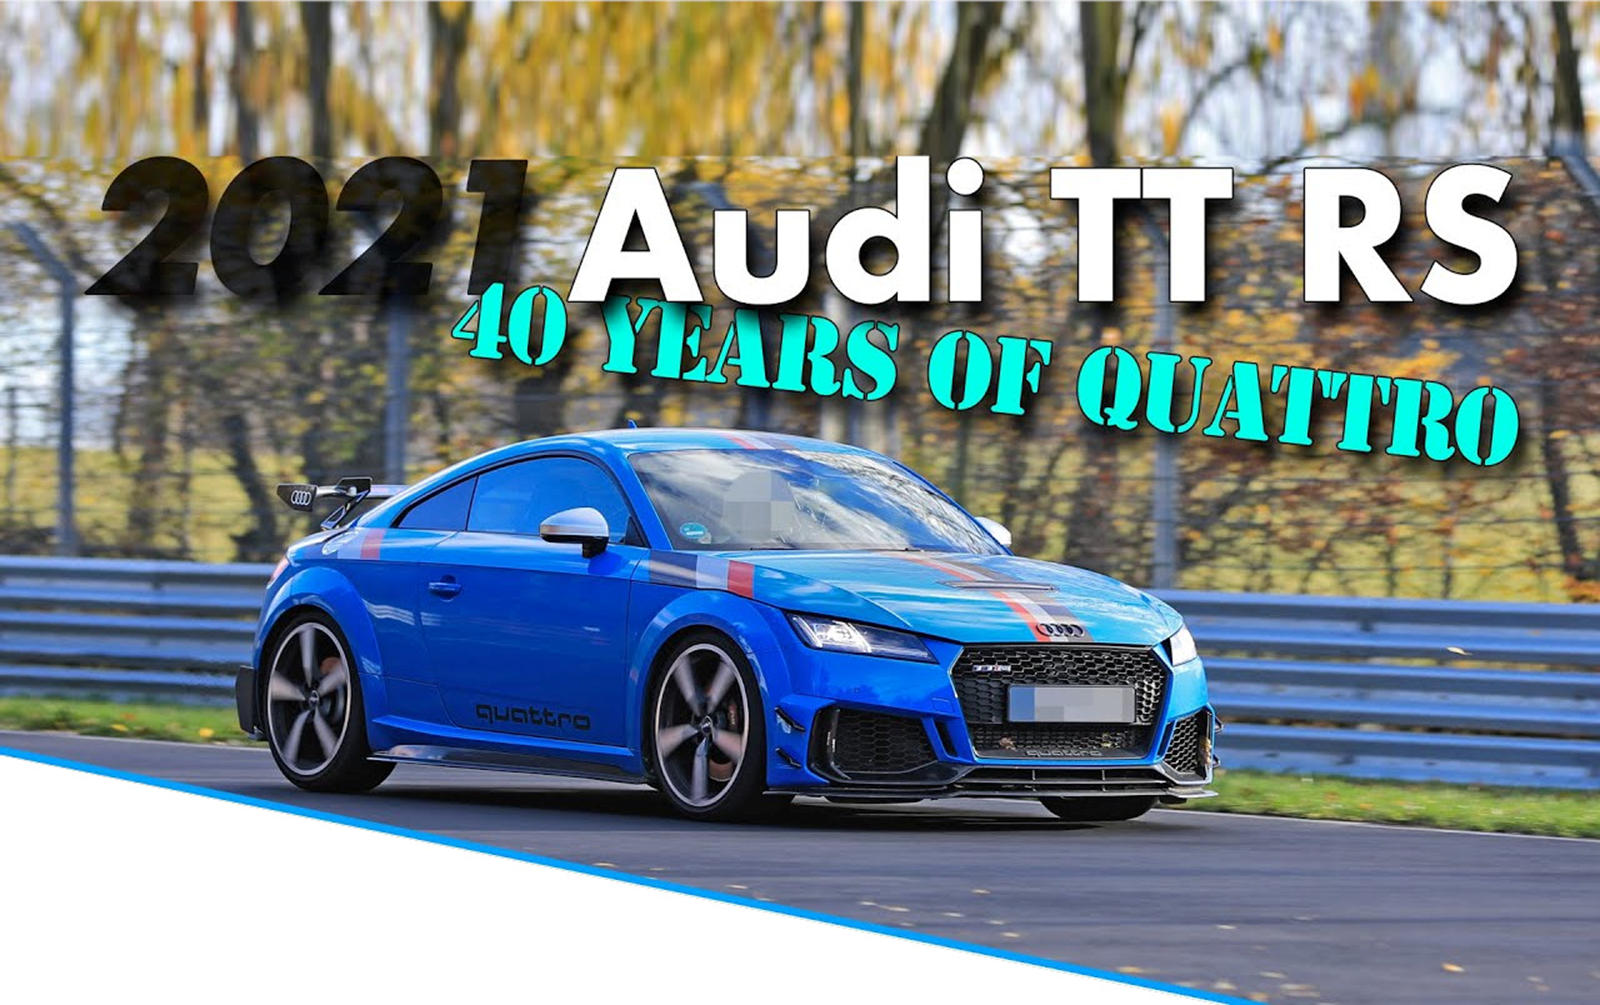 В ознаменование 40-летия легендарной полноприводной системы Audi Quattro Audi представляет новую специальную серию TT RS под названием Audi TT RS 40 Years of Quattro. Примечательно, что производство будет ограничено всего 40 экземплярами, так что они